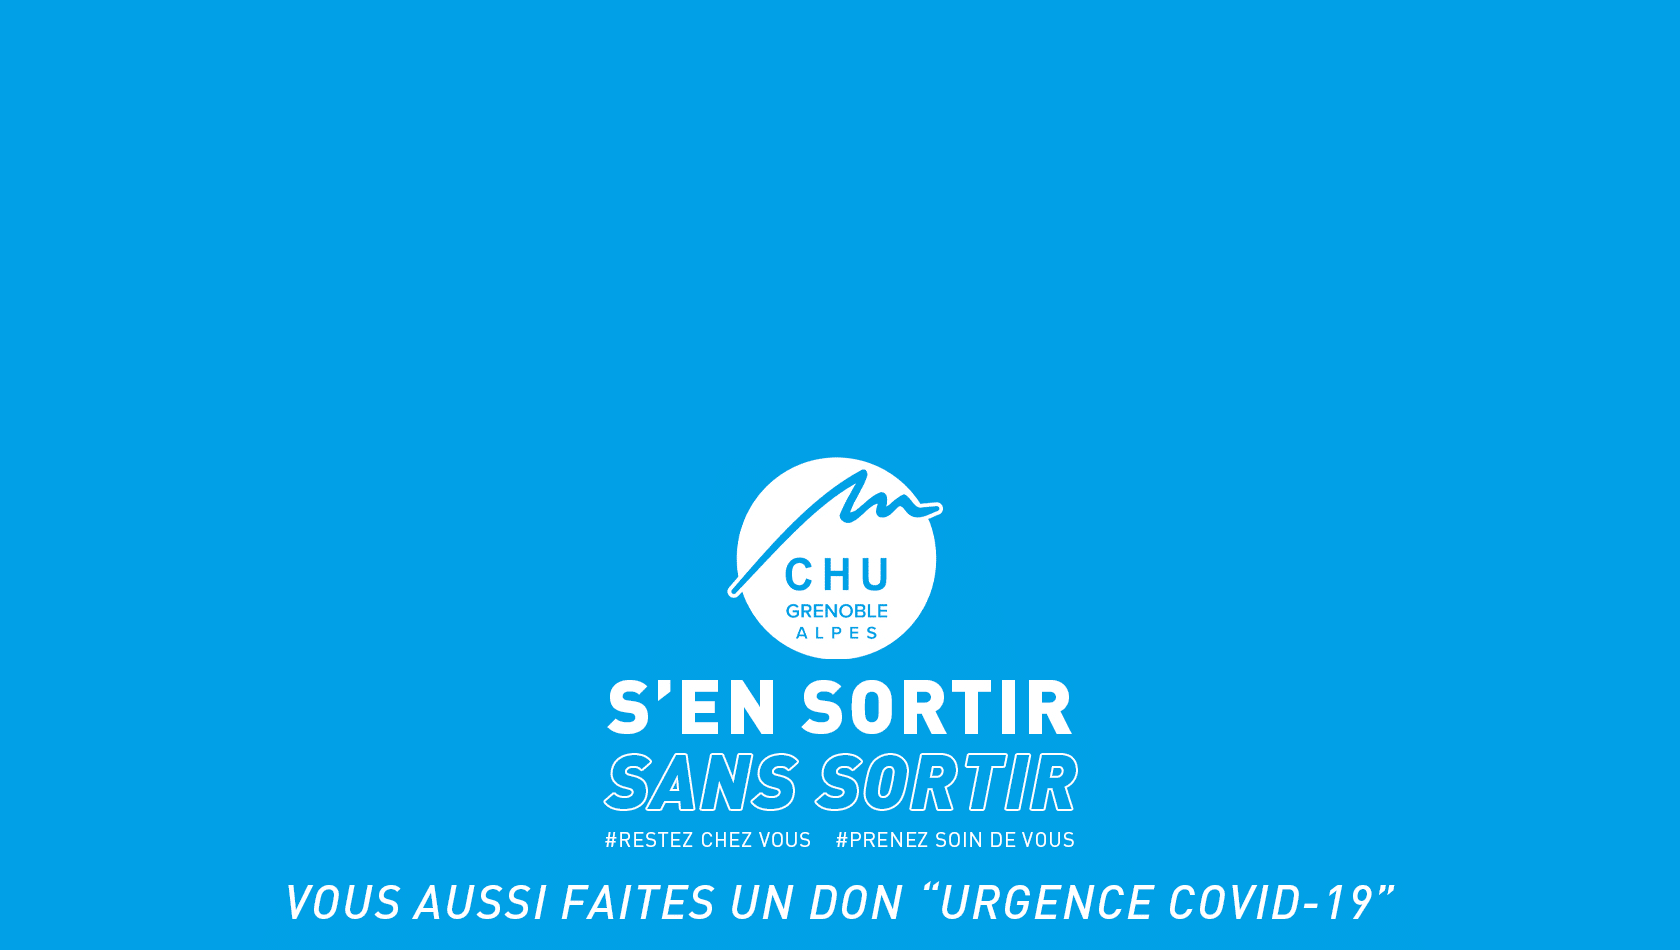 FX soutient le CHU de Grenoble